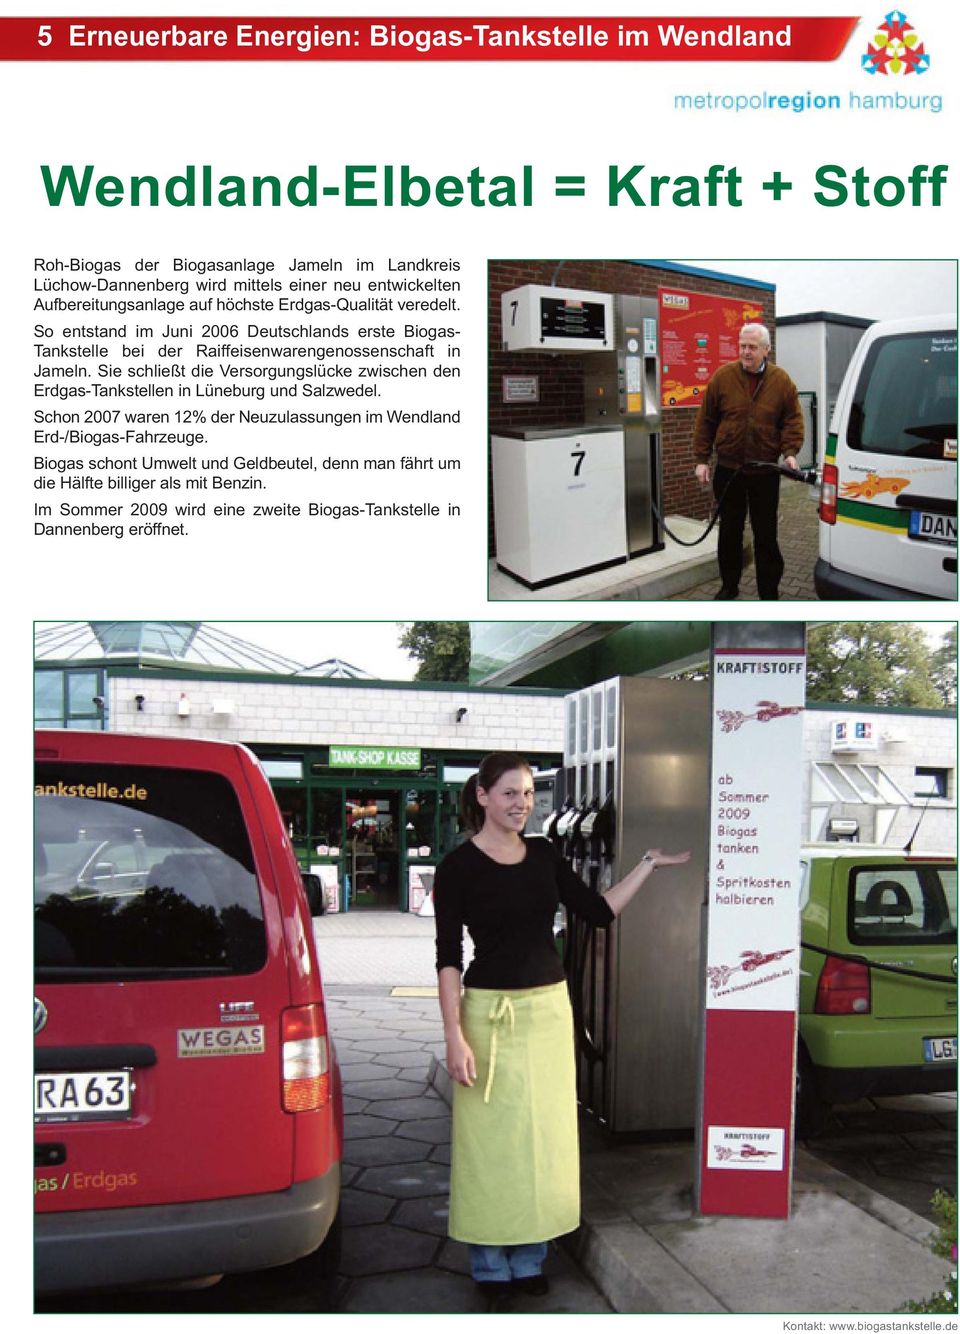 So entstand im Juni 2006 Deutschlands erste Biogas- Tankstelle bei der Raiffeisenwarengenossenschaft in Jameln.